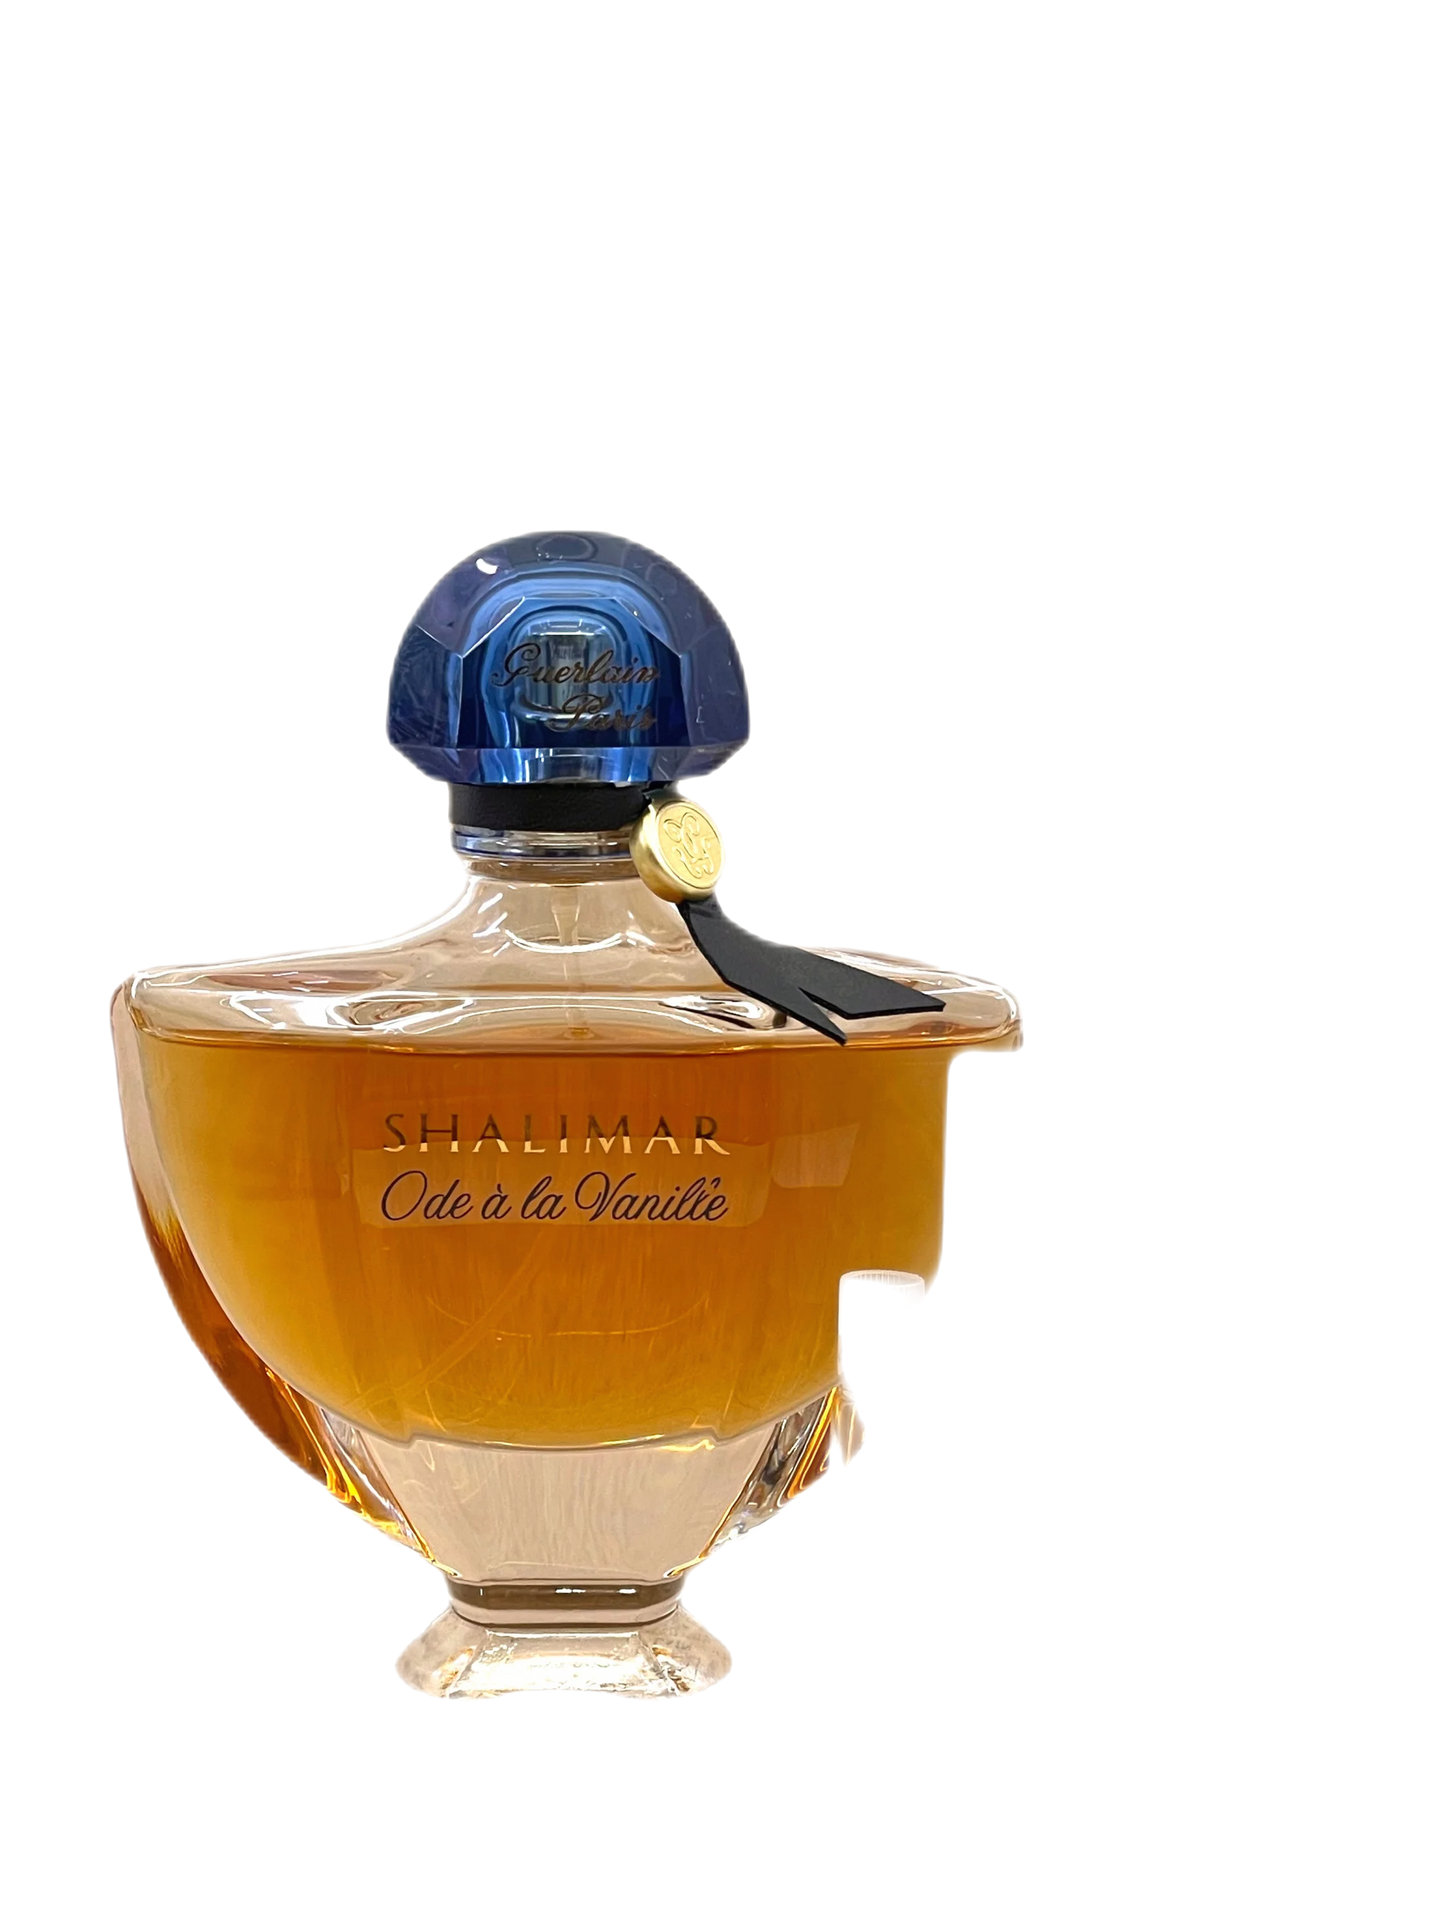 Guerlain SHALIMAR ODE A LA VANILLE eau de parfum